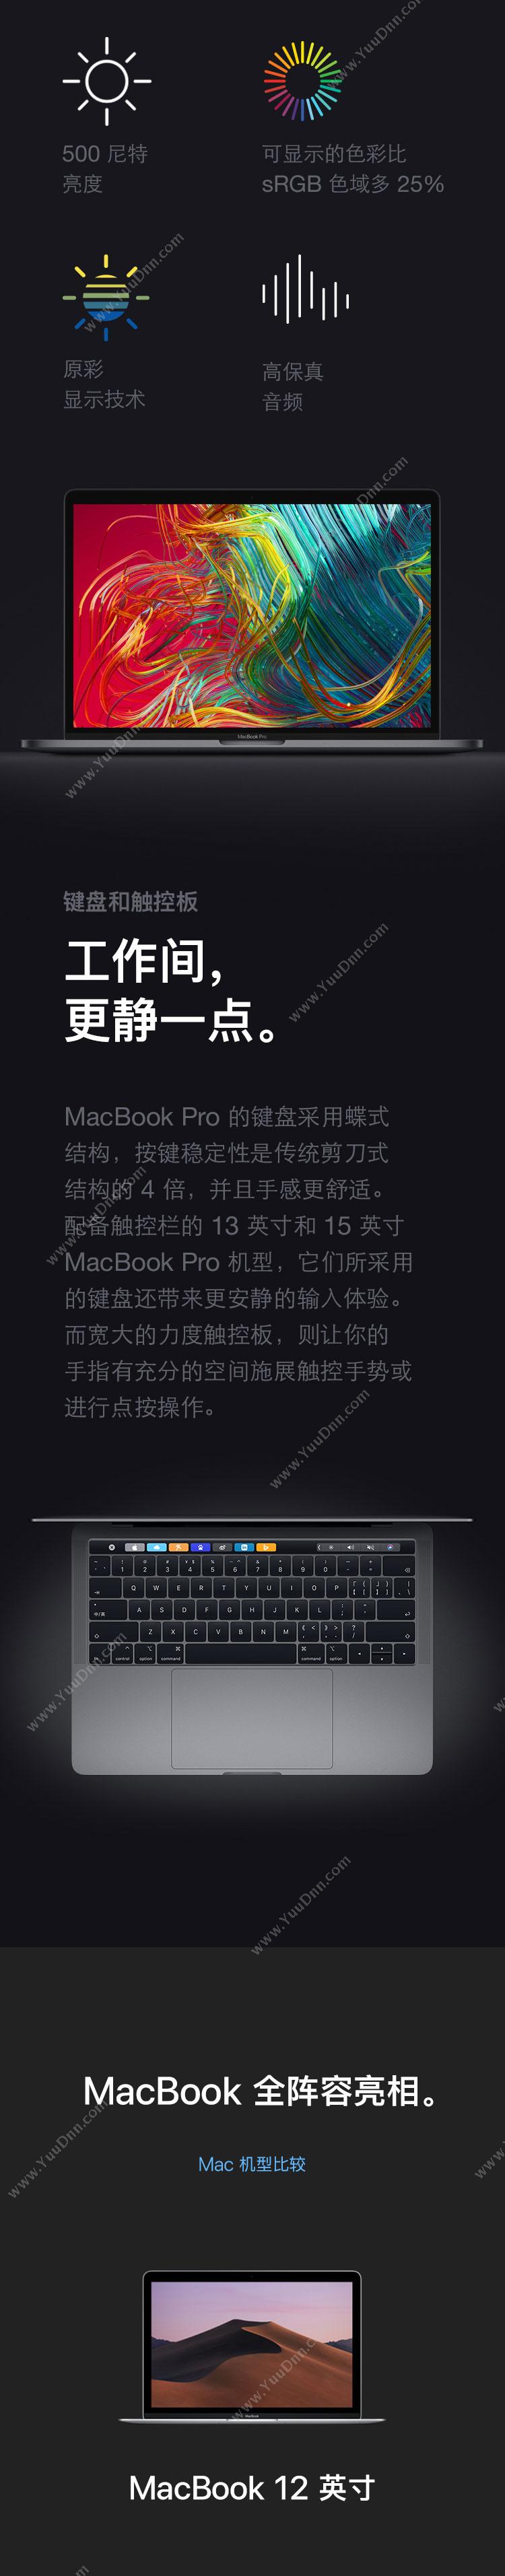 苹果 Apple MV992CH/A 13.3英寸 i5/8G/256G 金属(银） 笔记本